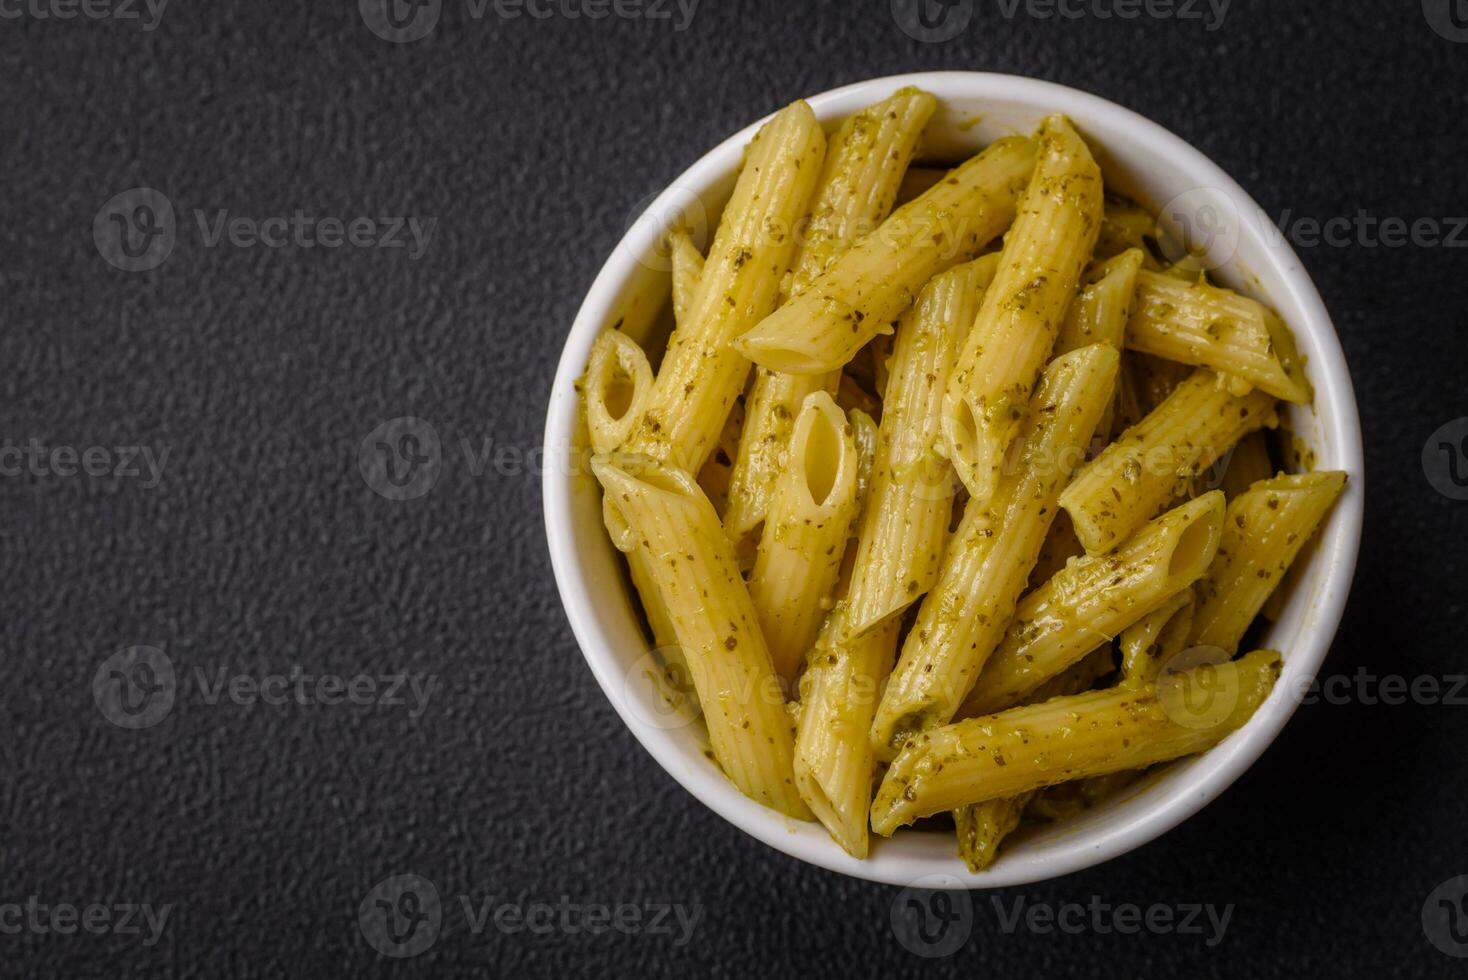 köstlich frisch Pasta Penne mit Grün Pesto Soße mit Basilikum, Salz- und Gewürze foto